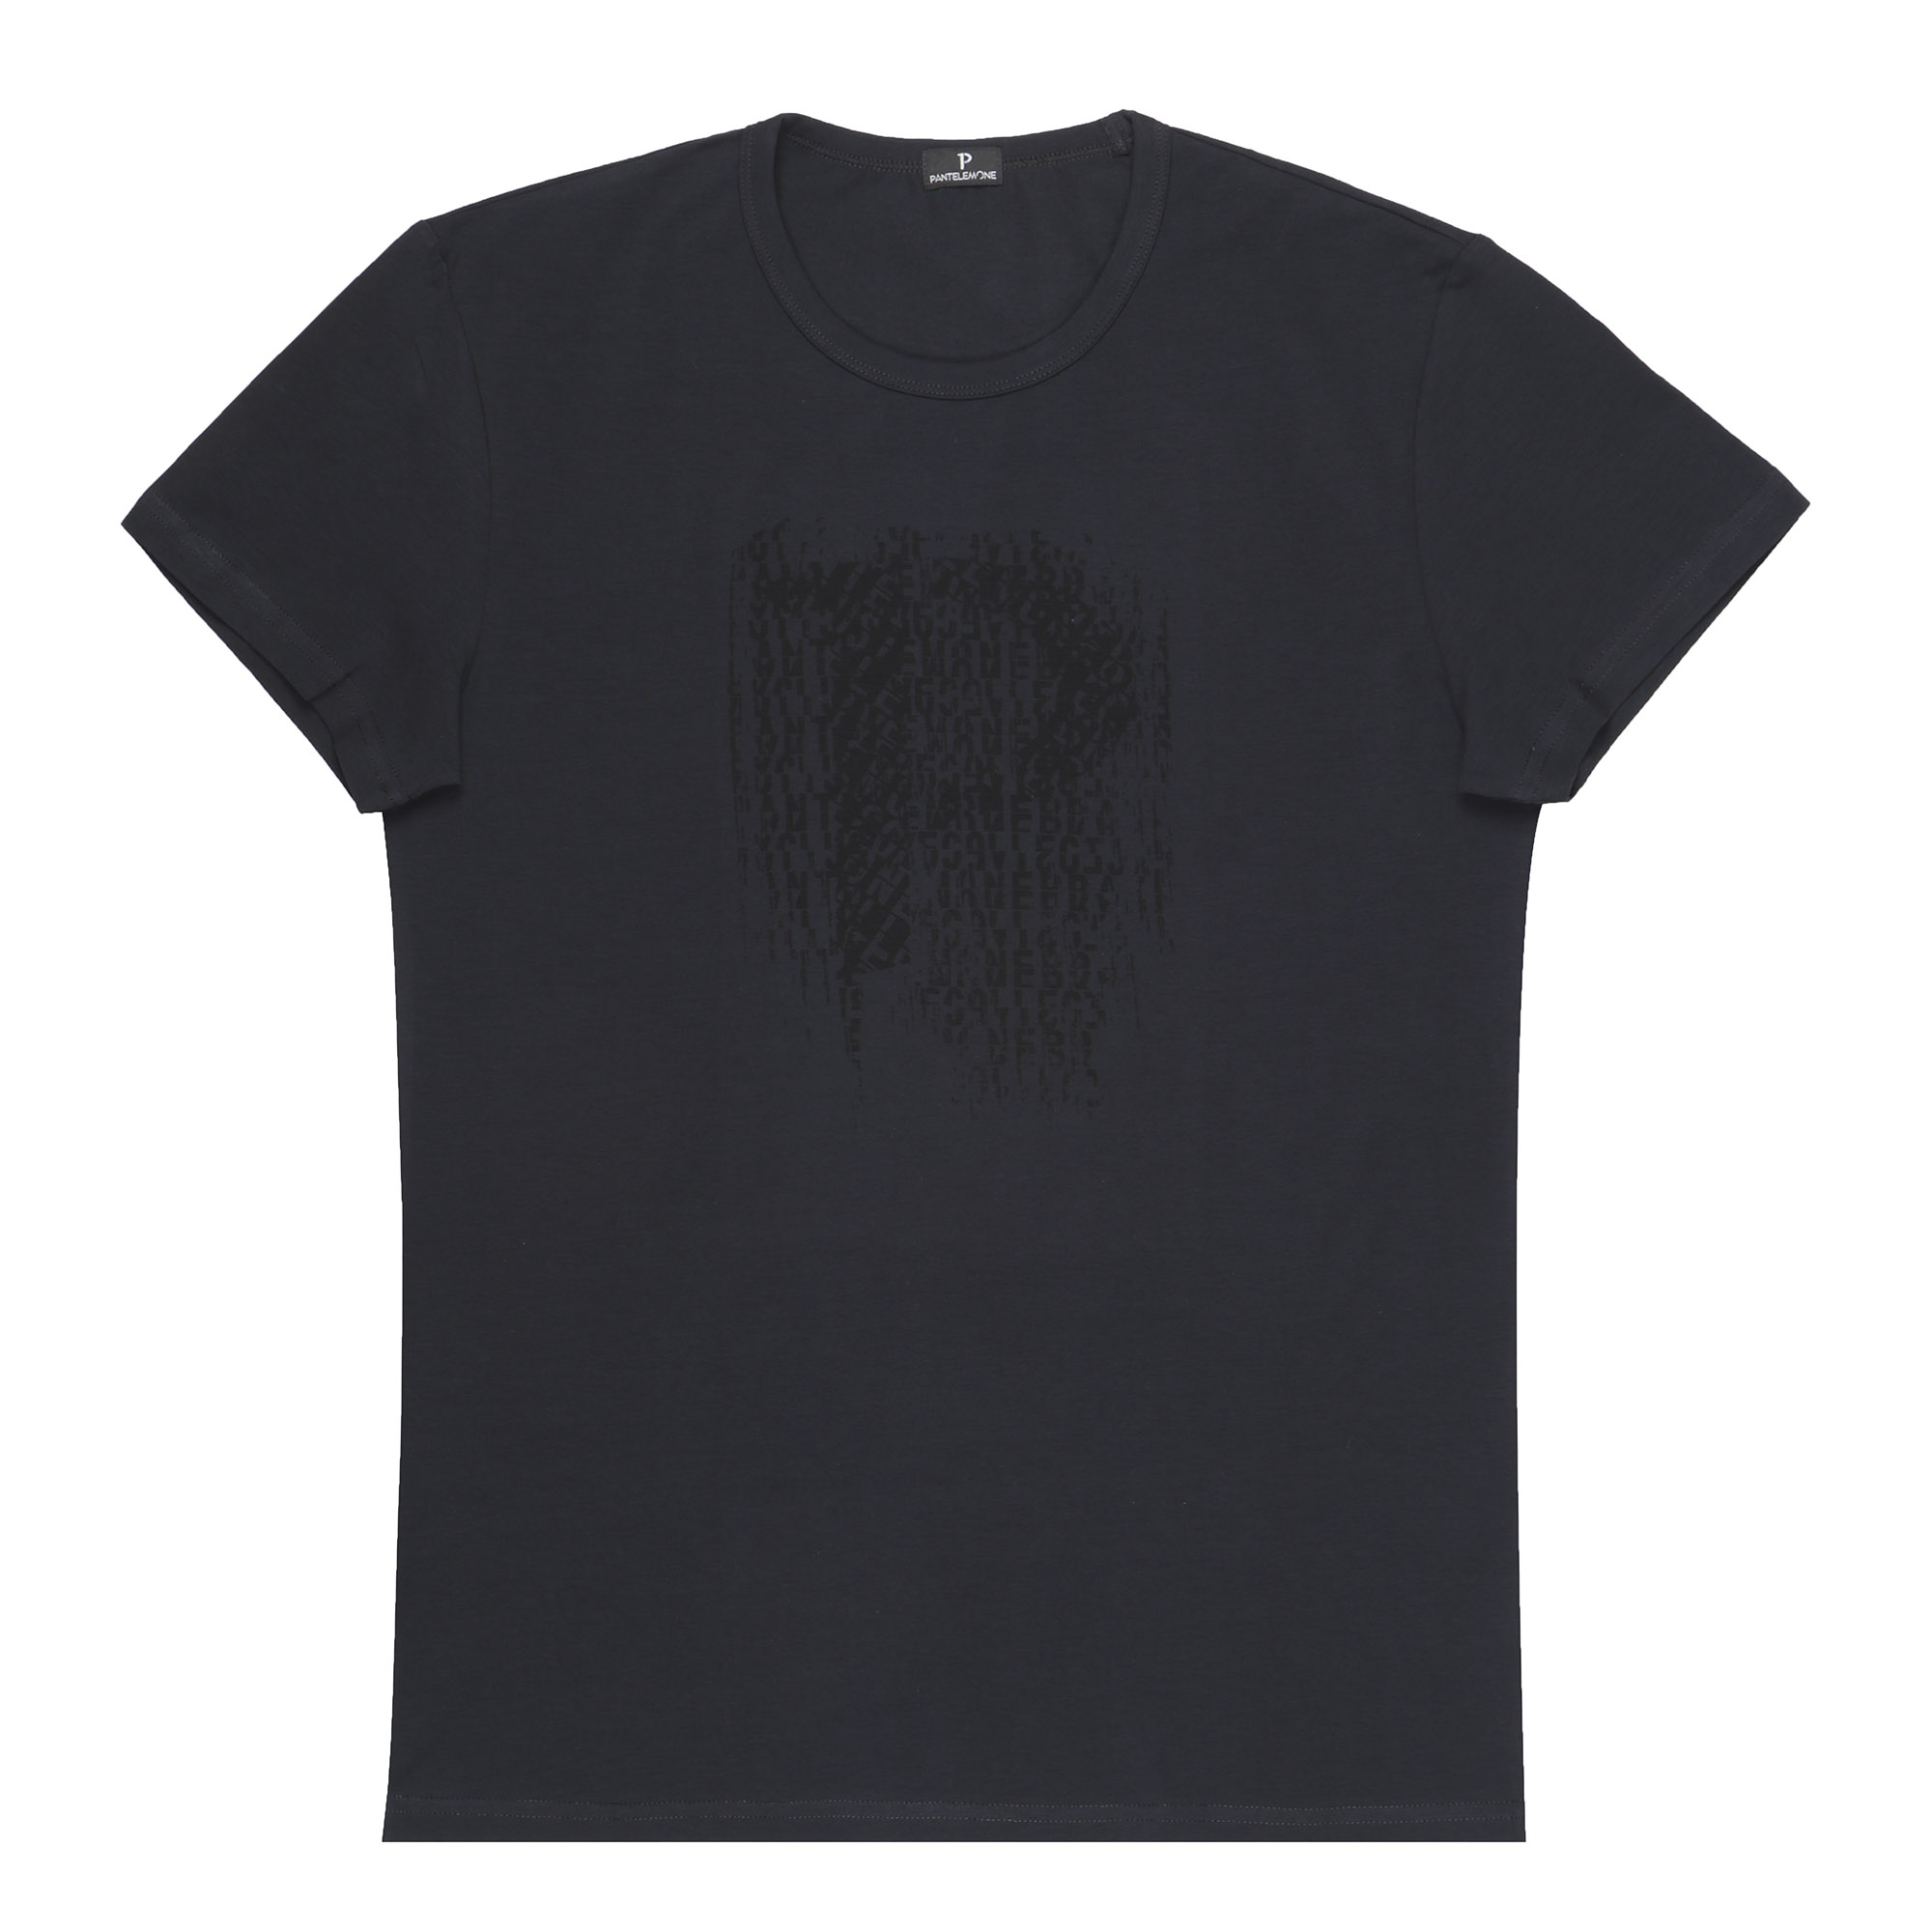 Мужская футболка Pantelemone MF-866 48 темно-серая, цвет темно-серый, размер 48 - фото 1